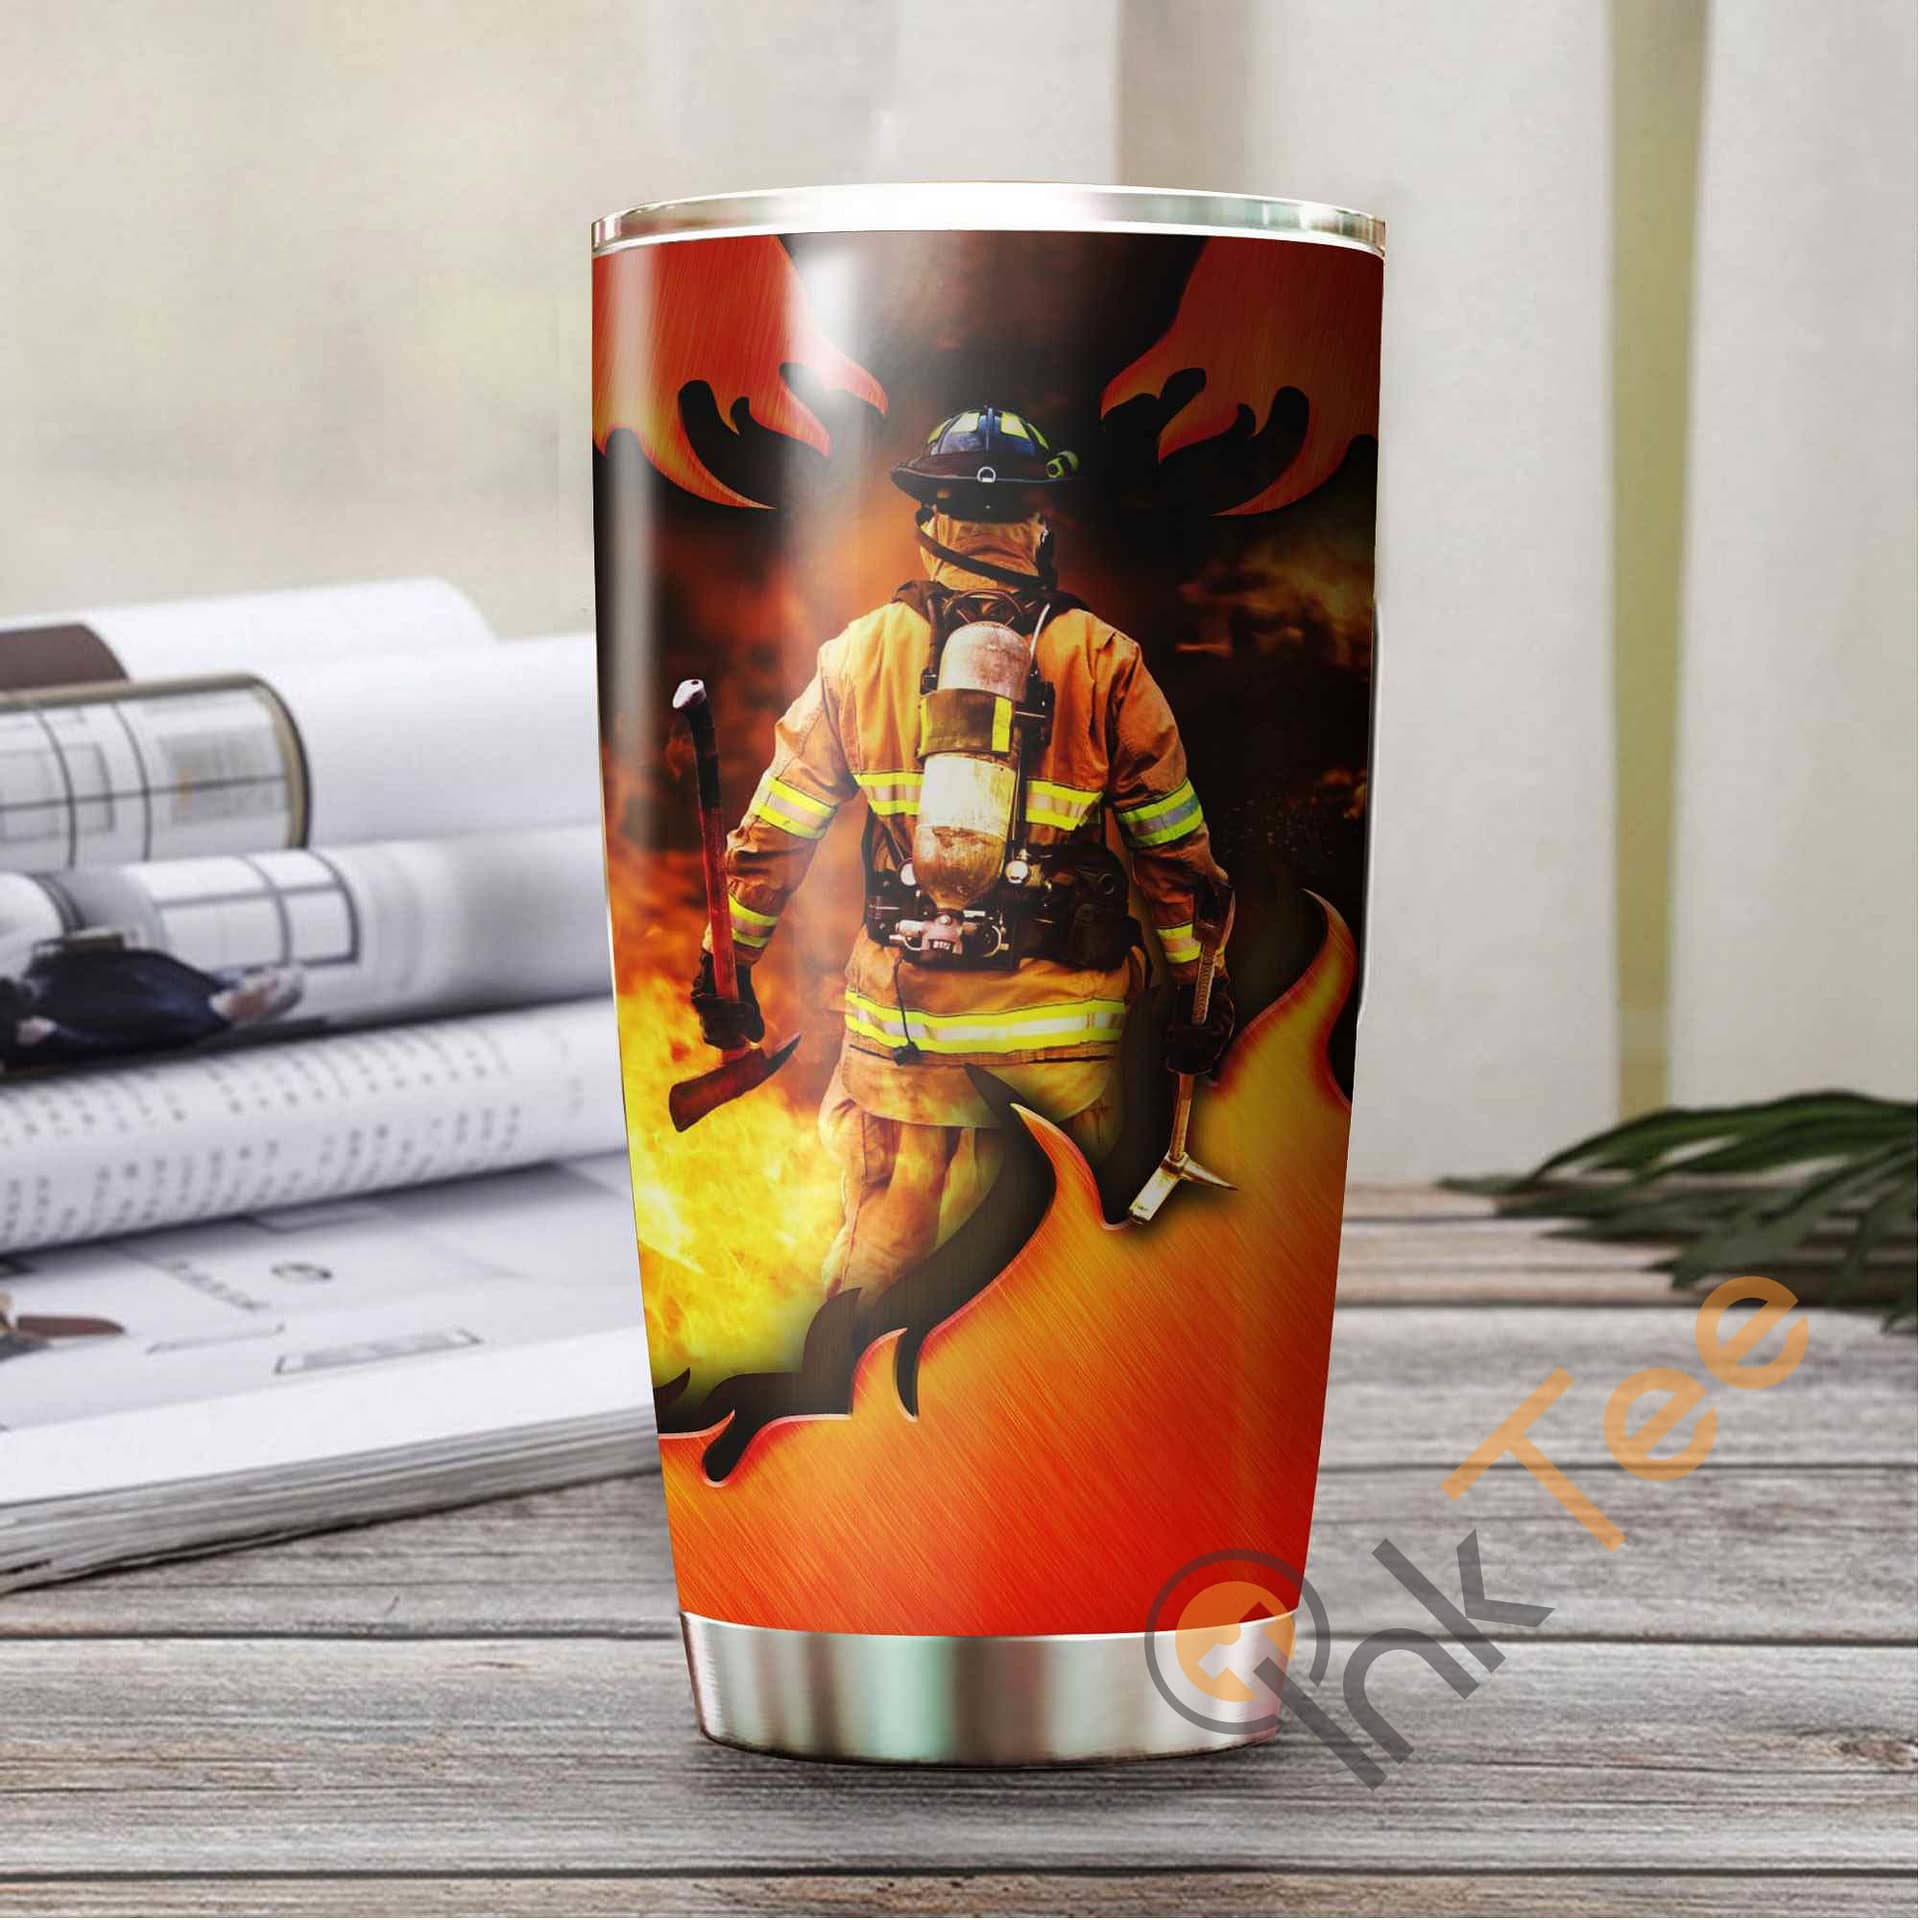 Firefighter Amazon Best Seller Sku 3810 Stainless Steel Tumbler